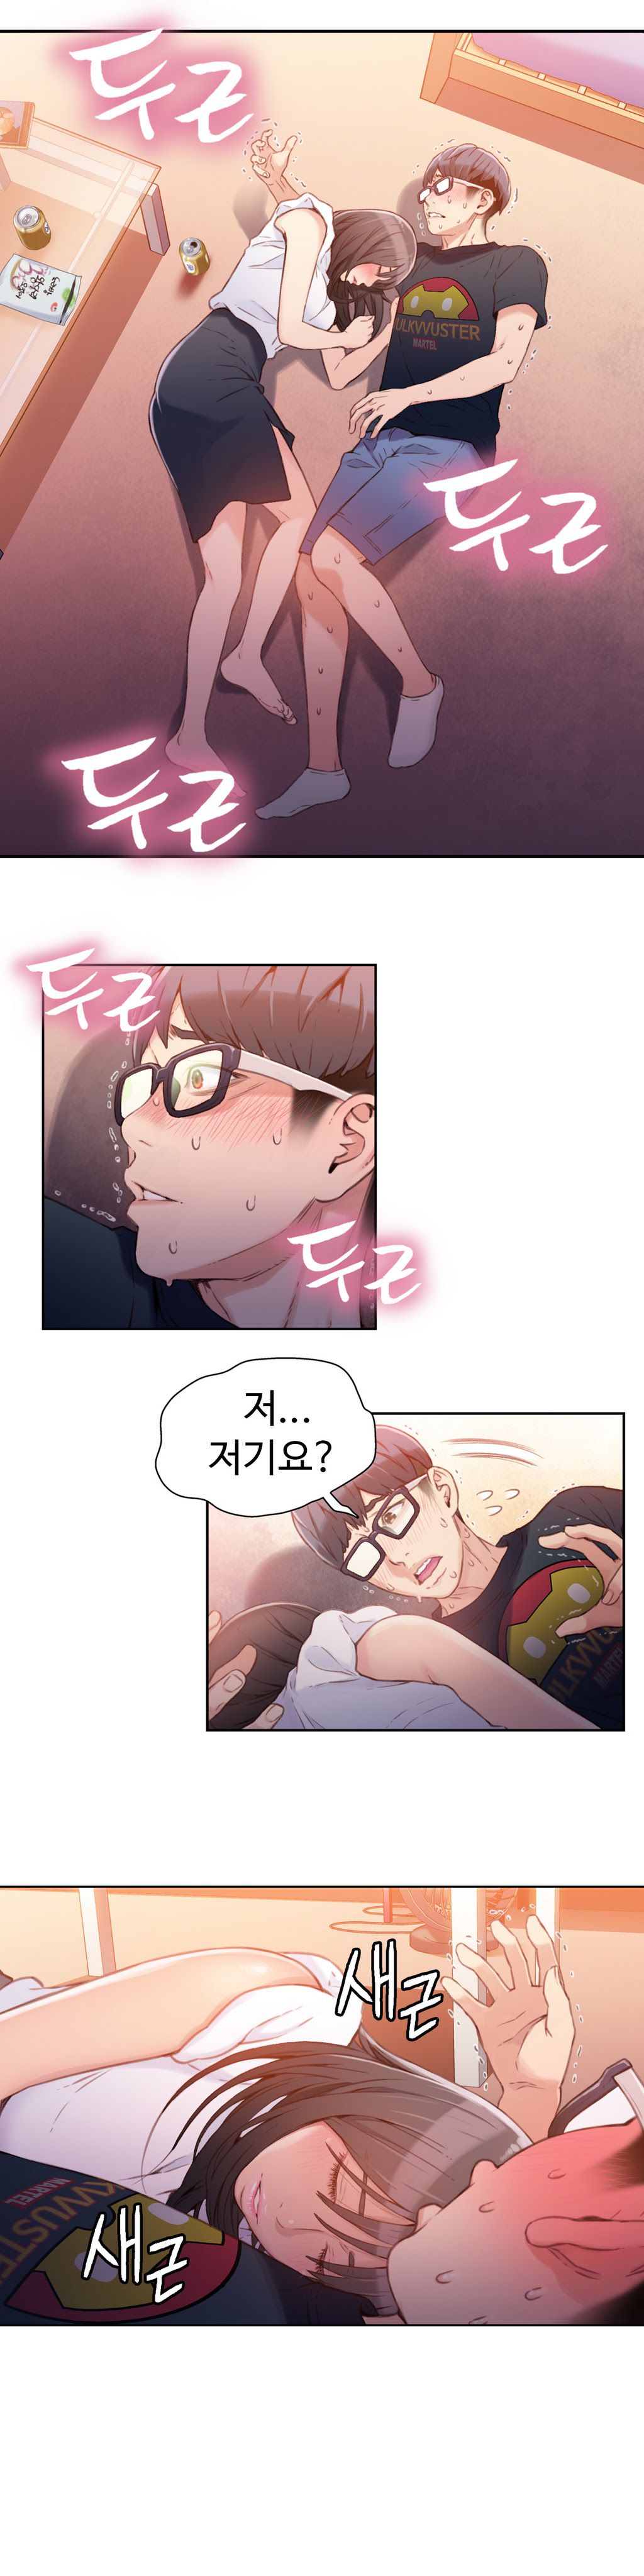 Sweet Guy Chapter 18 [Korean] (Full Color) Lezhin Comics 2wonsik2 18